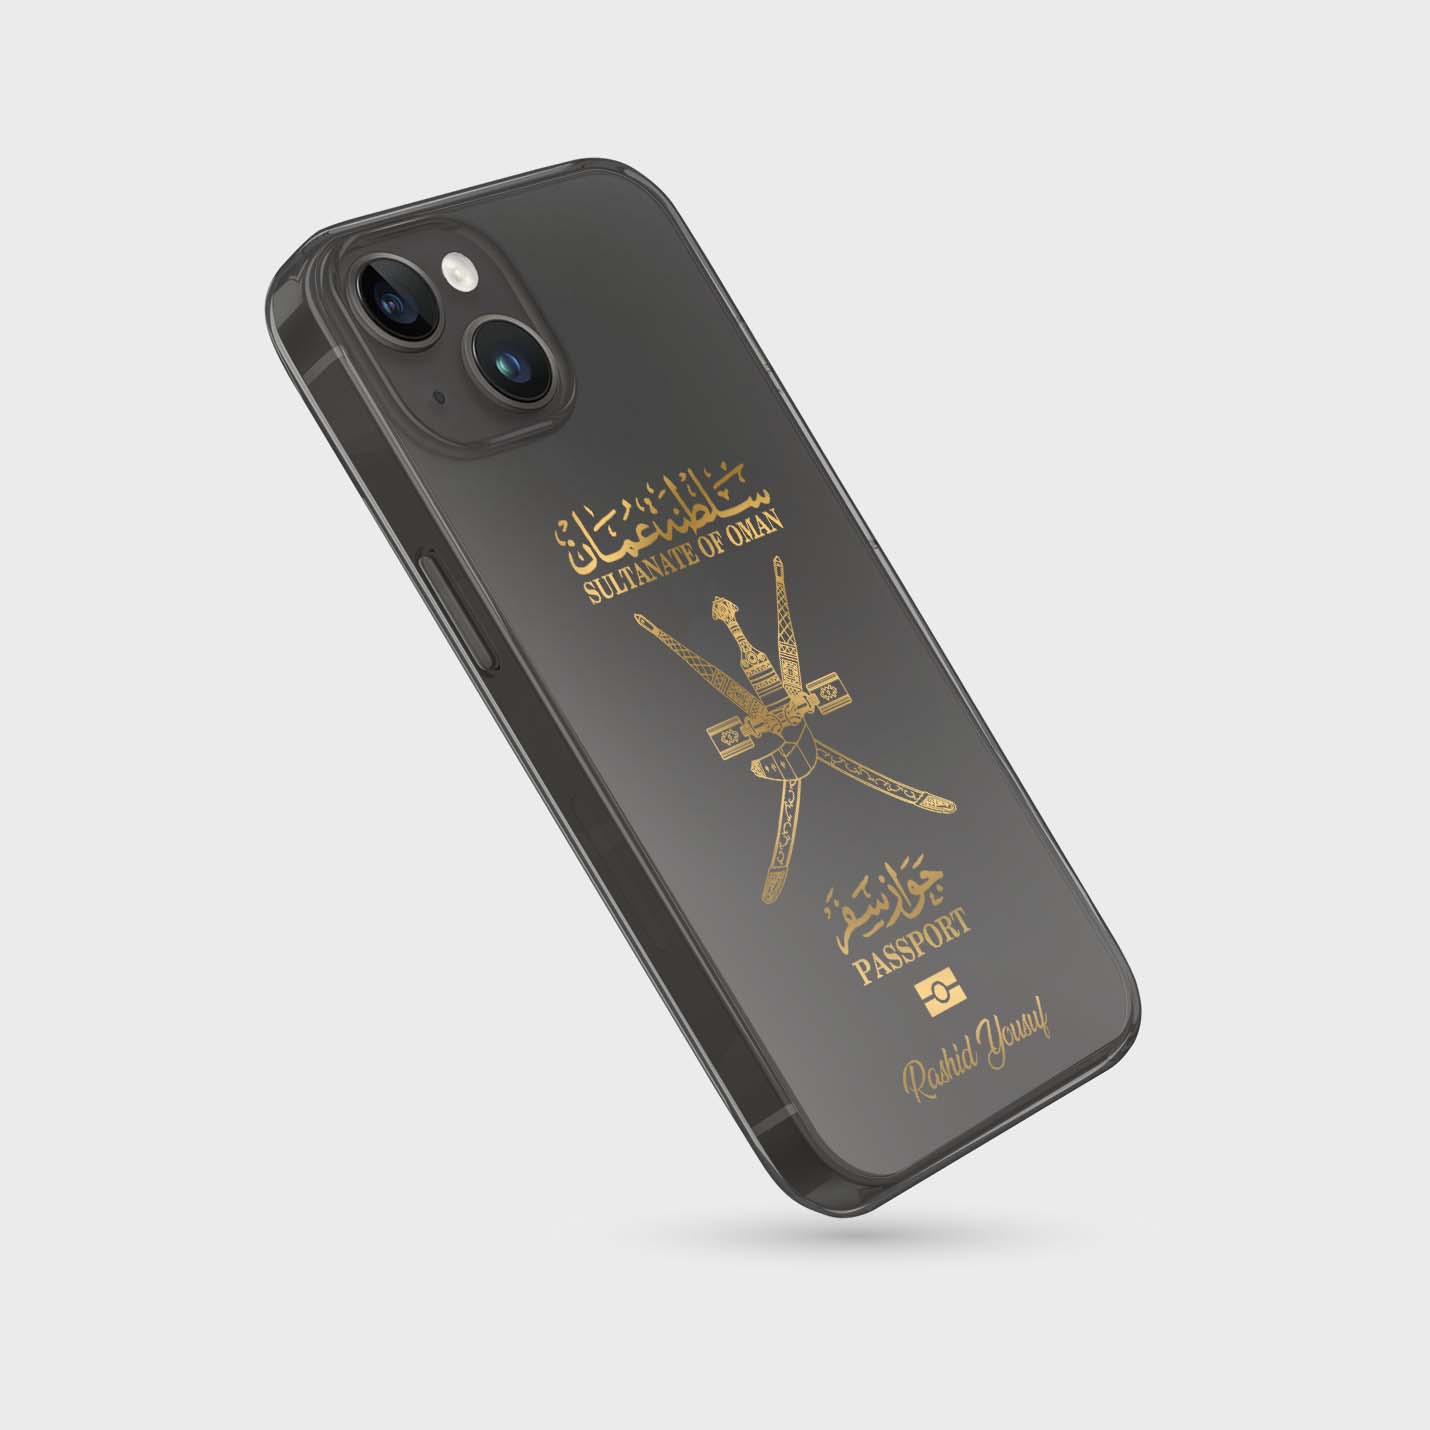 Handyhüllen mit Reisepass - Oman - 1instaphone